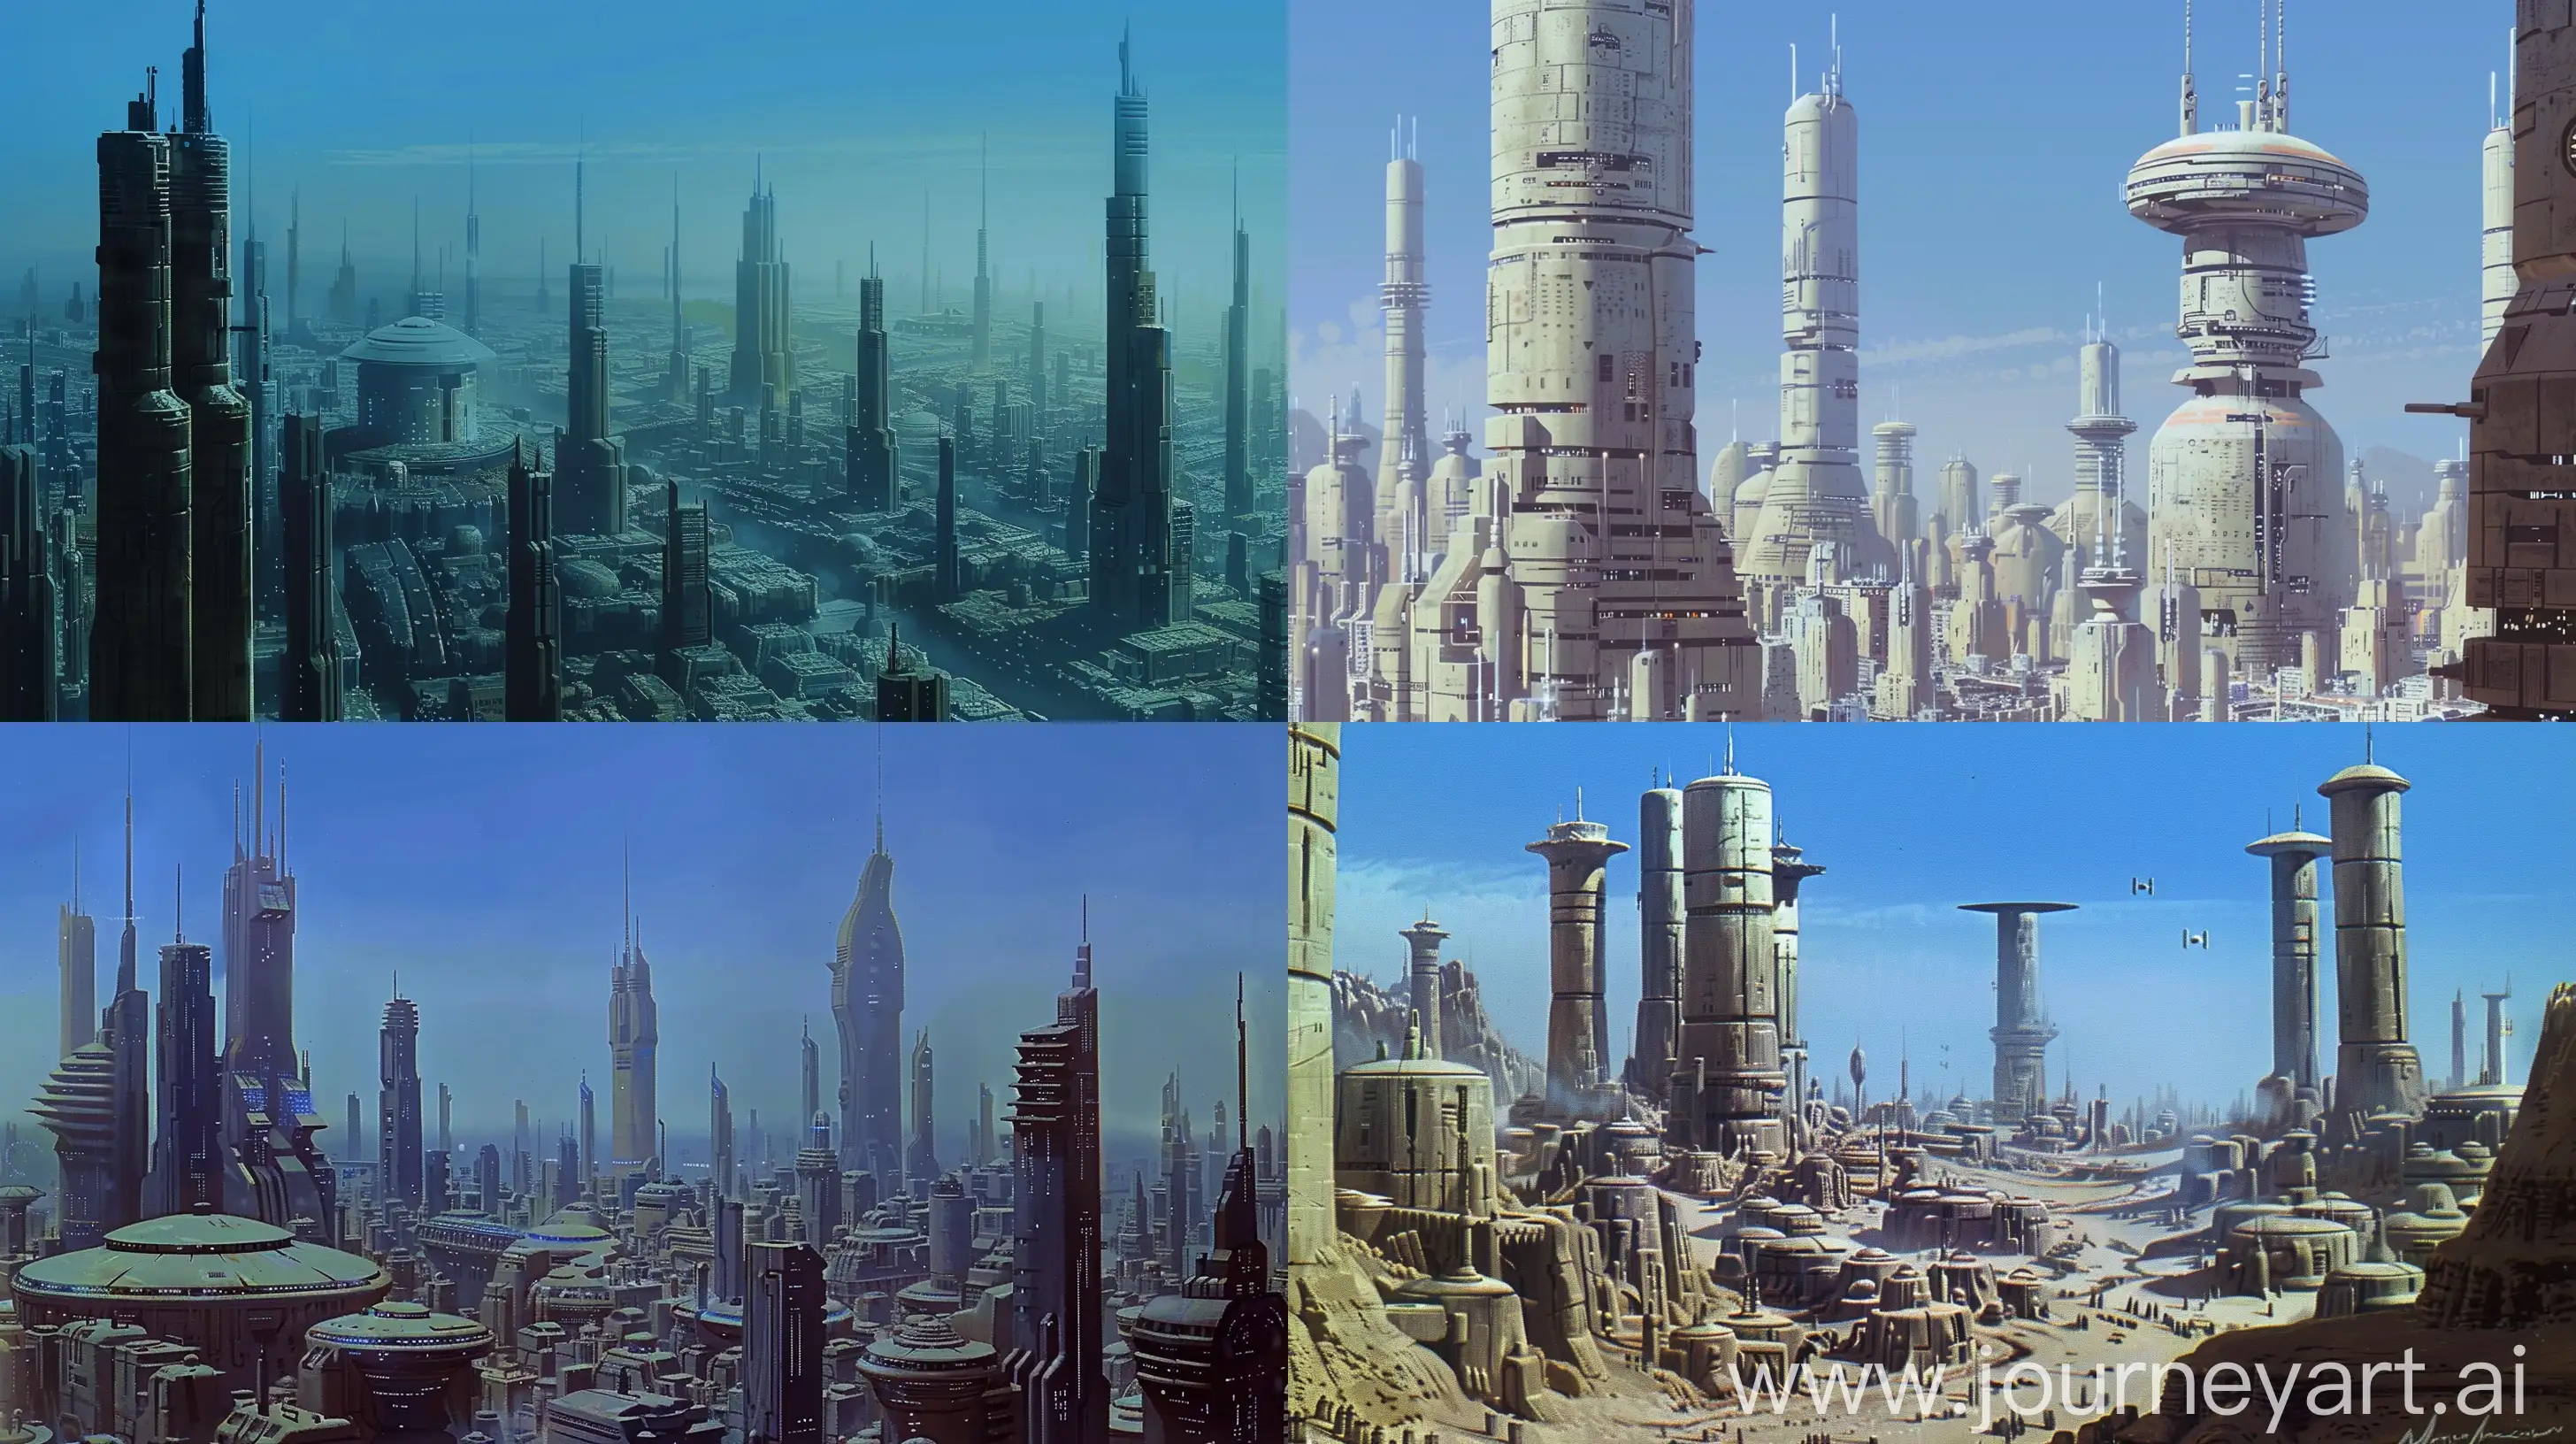 Futuristic-City-Skyline-in-Retro-70s-SciFi-Style-Coruscant-Inspired-Concept-Art